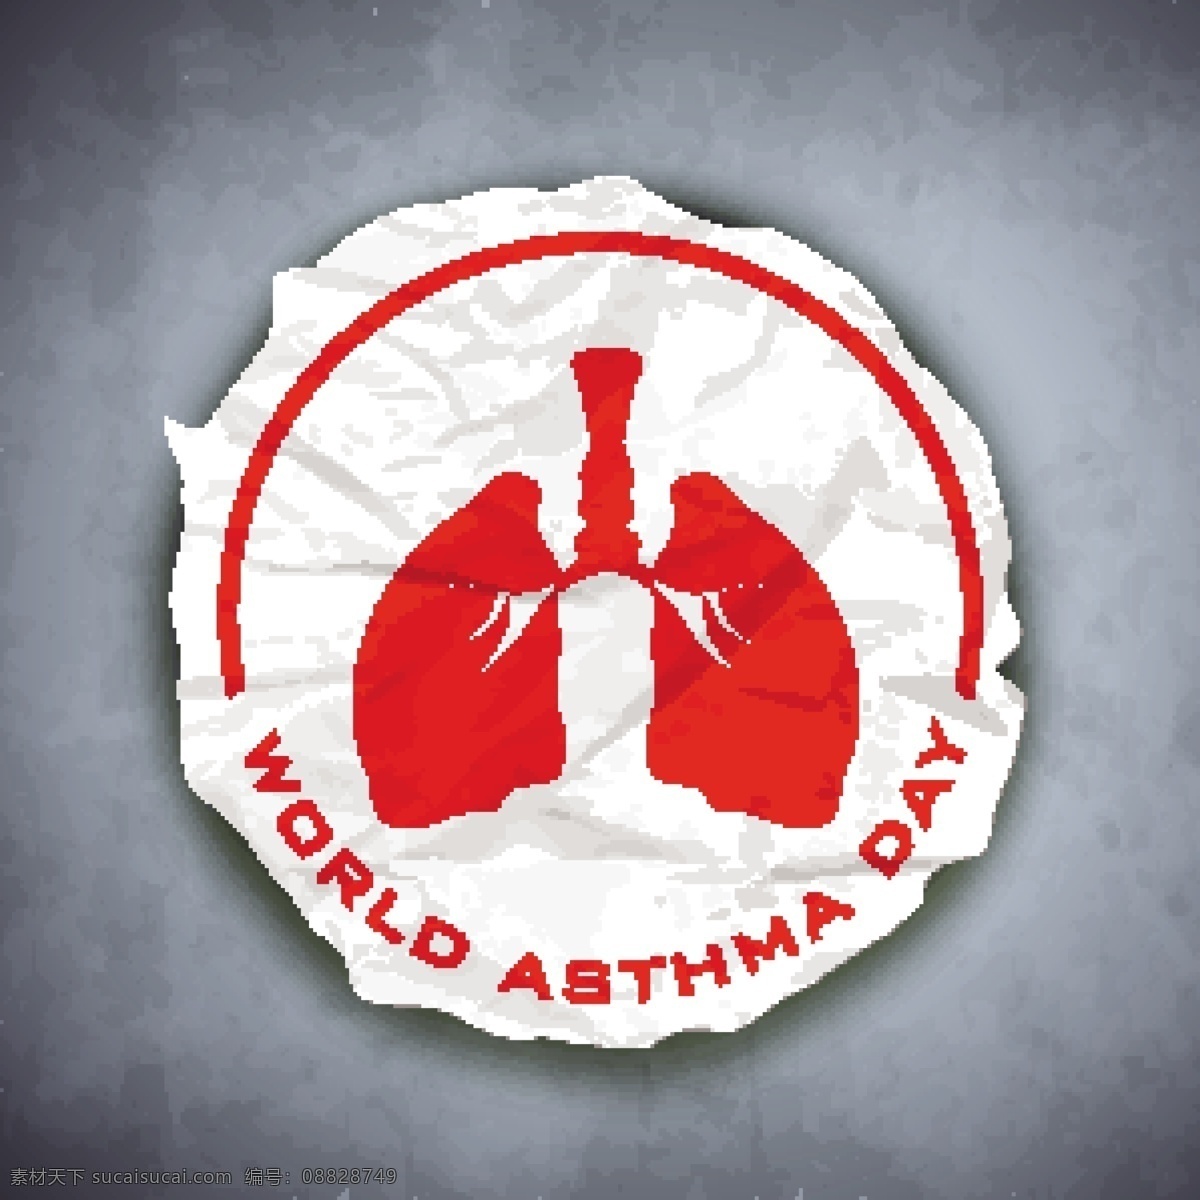 世界哮喘日 哮喘 日 宣传海报 肺 器管 医疗 5月6日 禁烟 医学 呼吸 哮喘病 科普 活动海报 海报 矢量